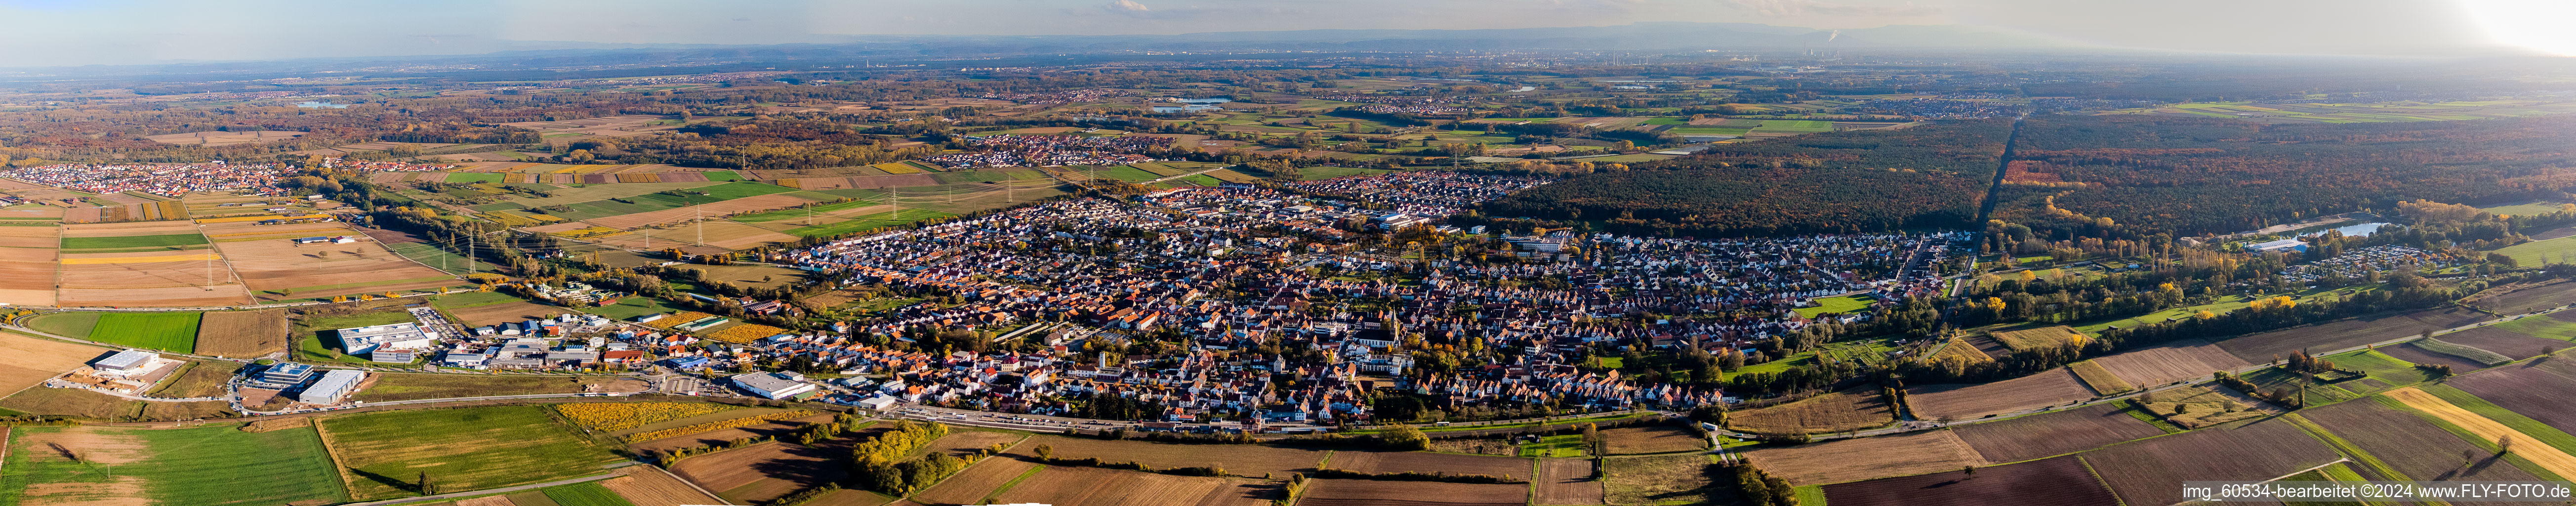 Vue aérienne de Vue panoramique en perspective des rues et des maisons des quartiers résidentiels à Rülzheim dans le département Rhénanie-Palatinat, Allemagne